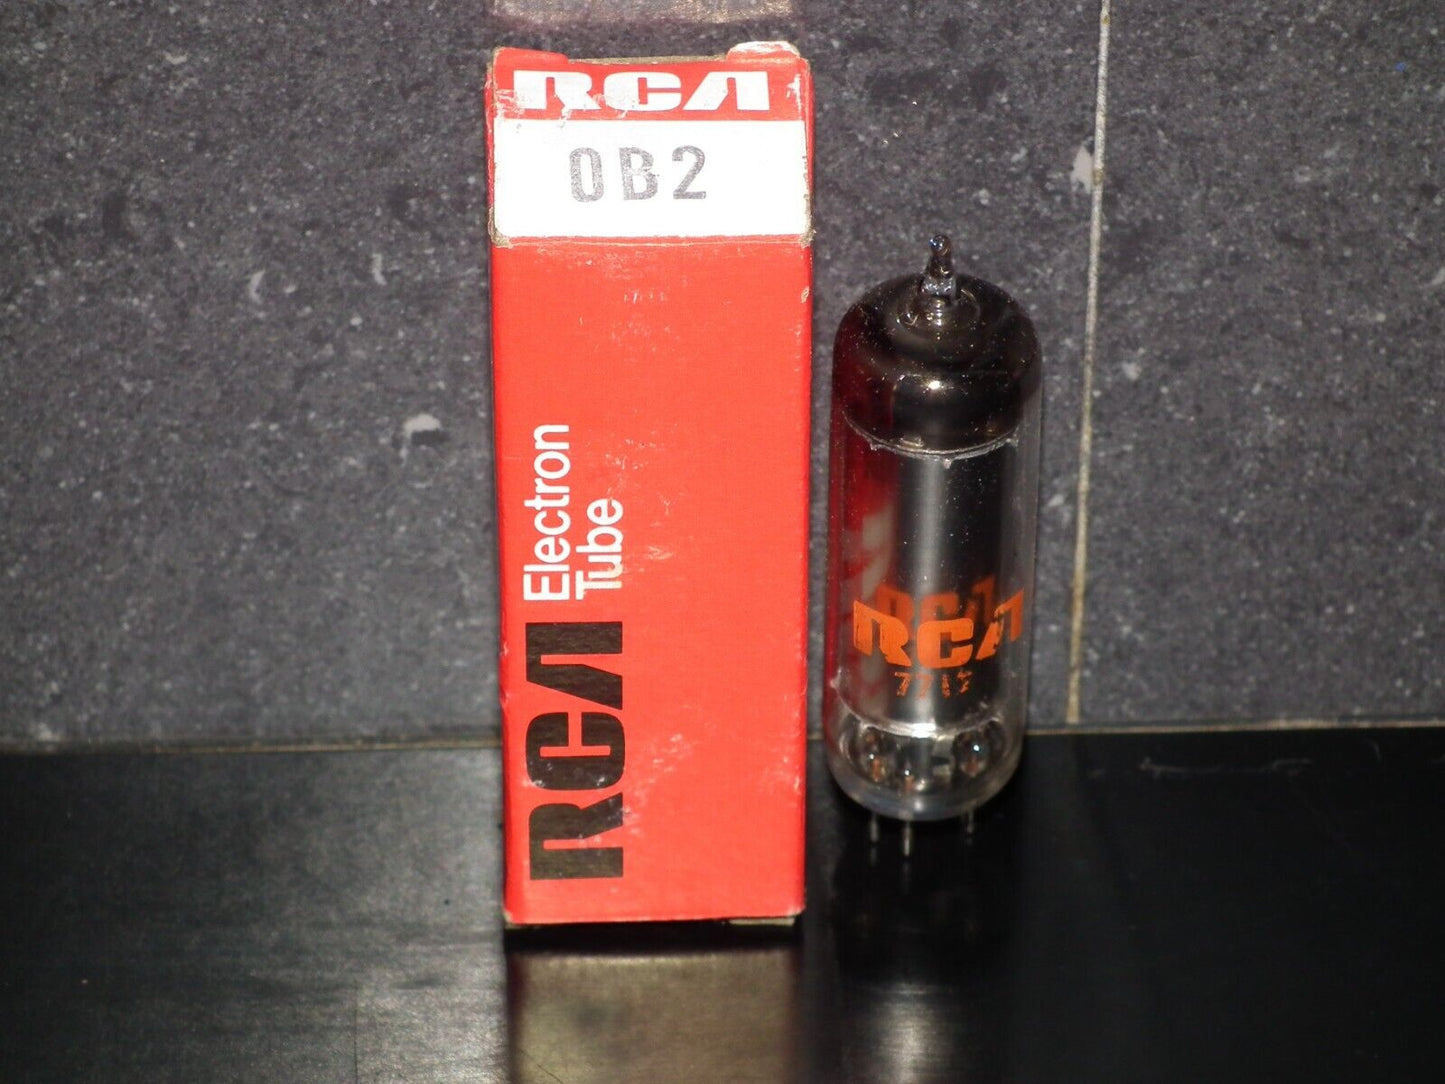 0B2 OB2 RCA NOS 108C1 stabilisator tube STV108/30 USA Made